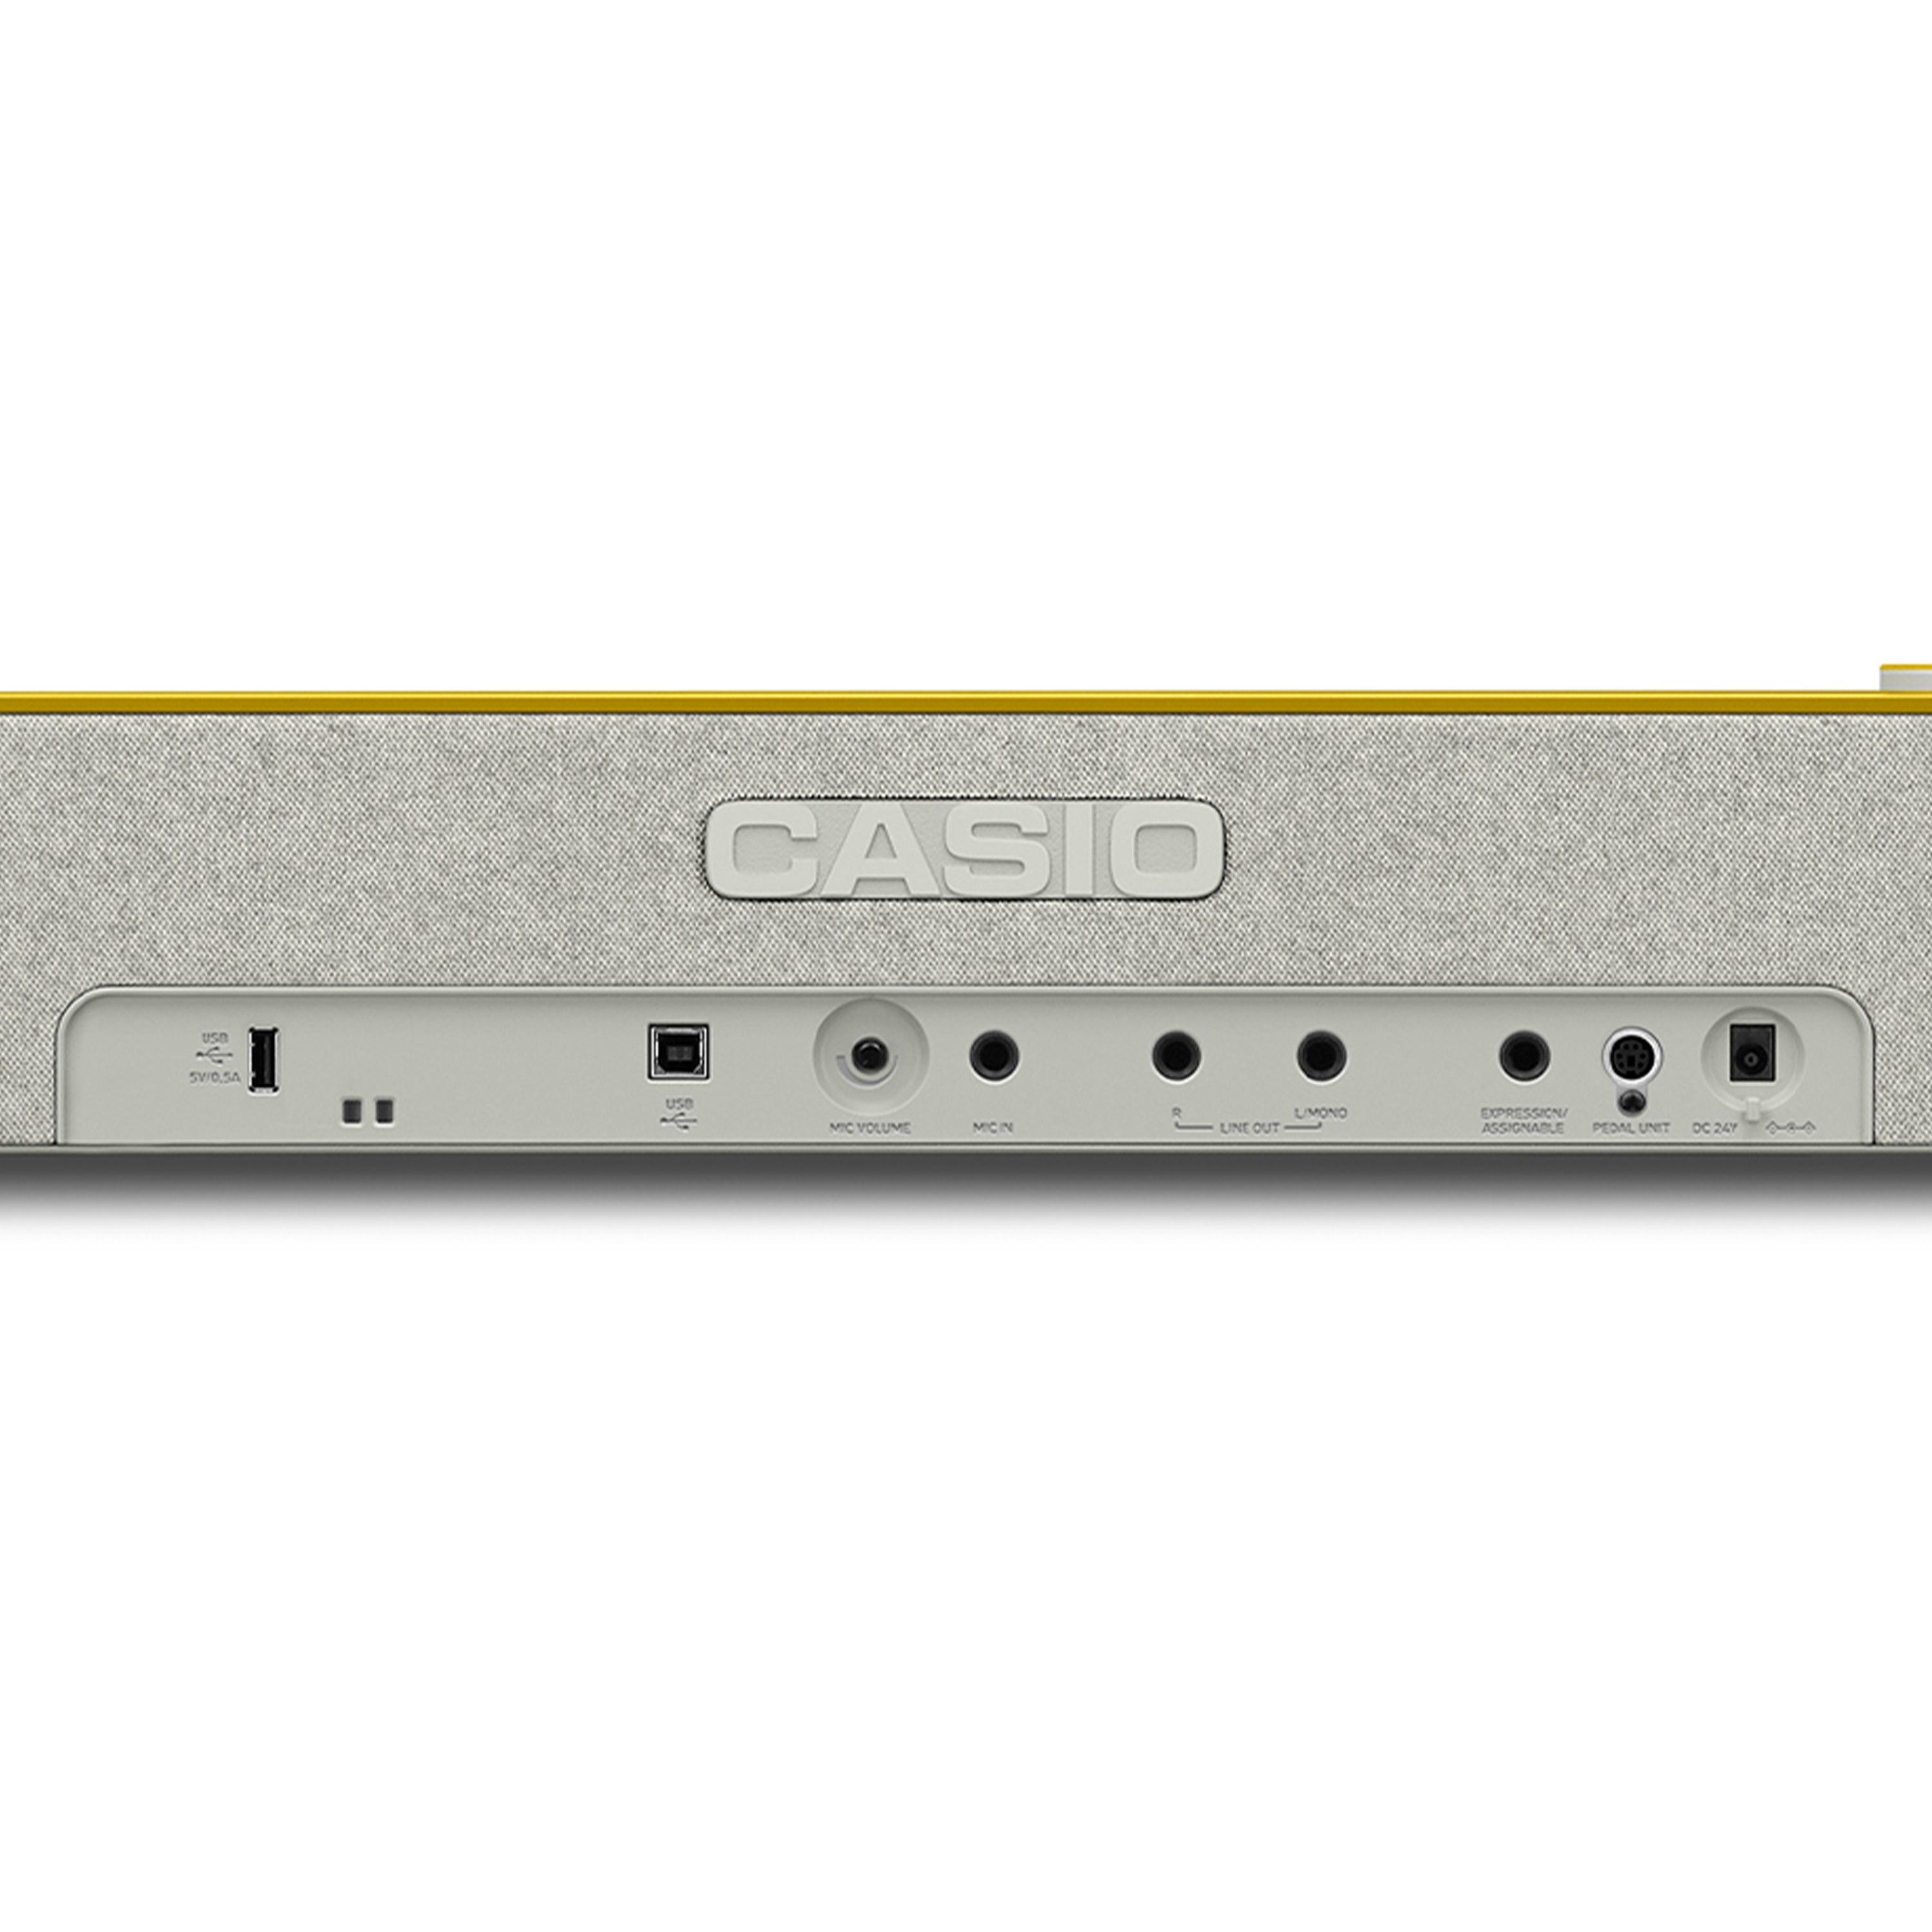 Casio PX-S7000 Digital Piano - Harmonious Mustard – Kraft Music